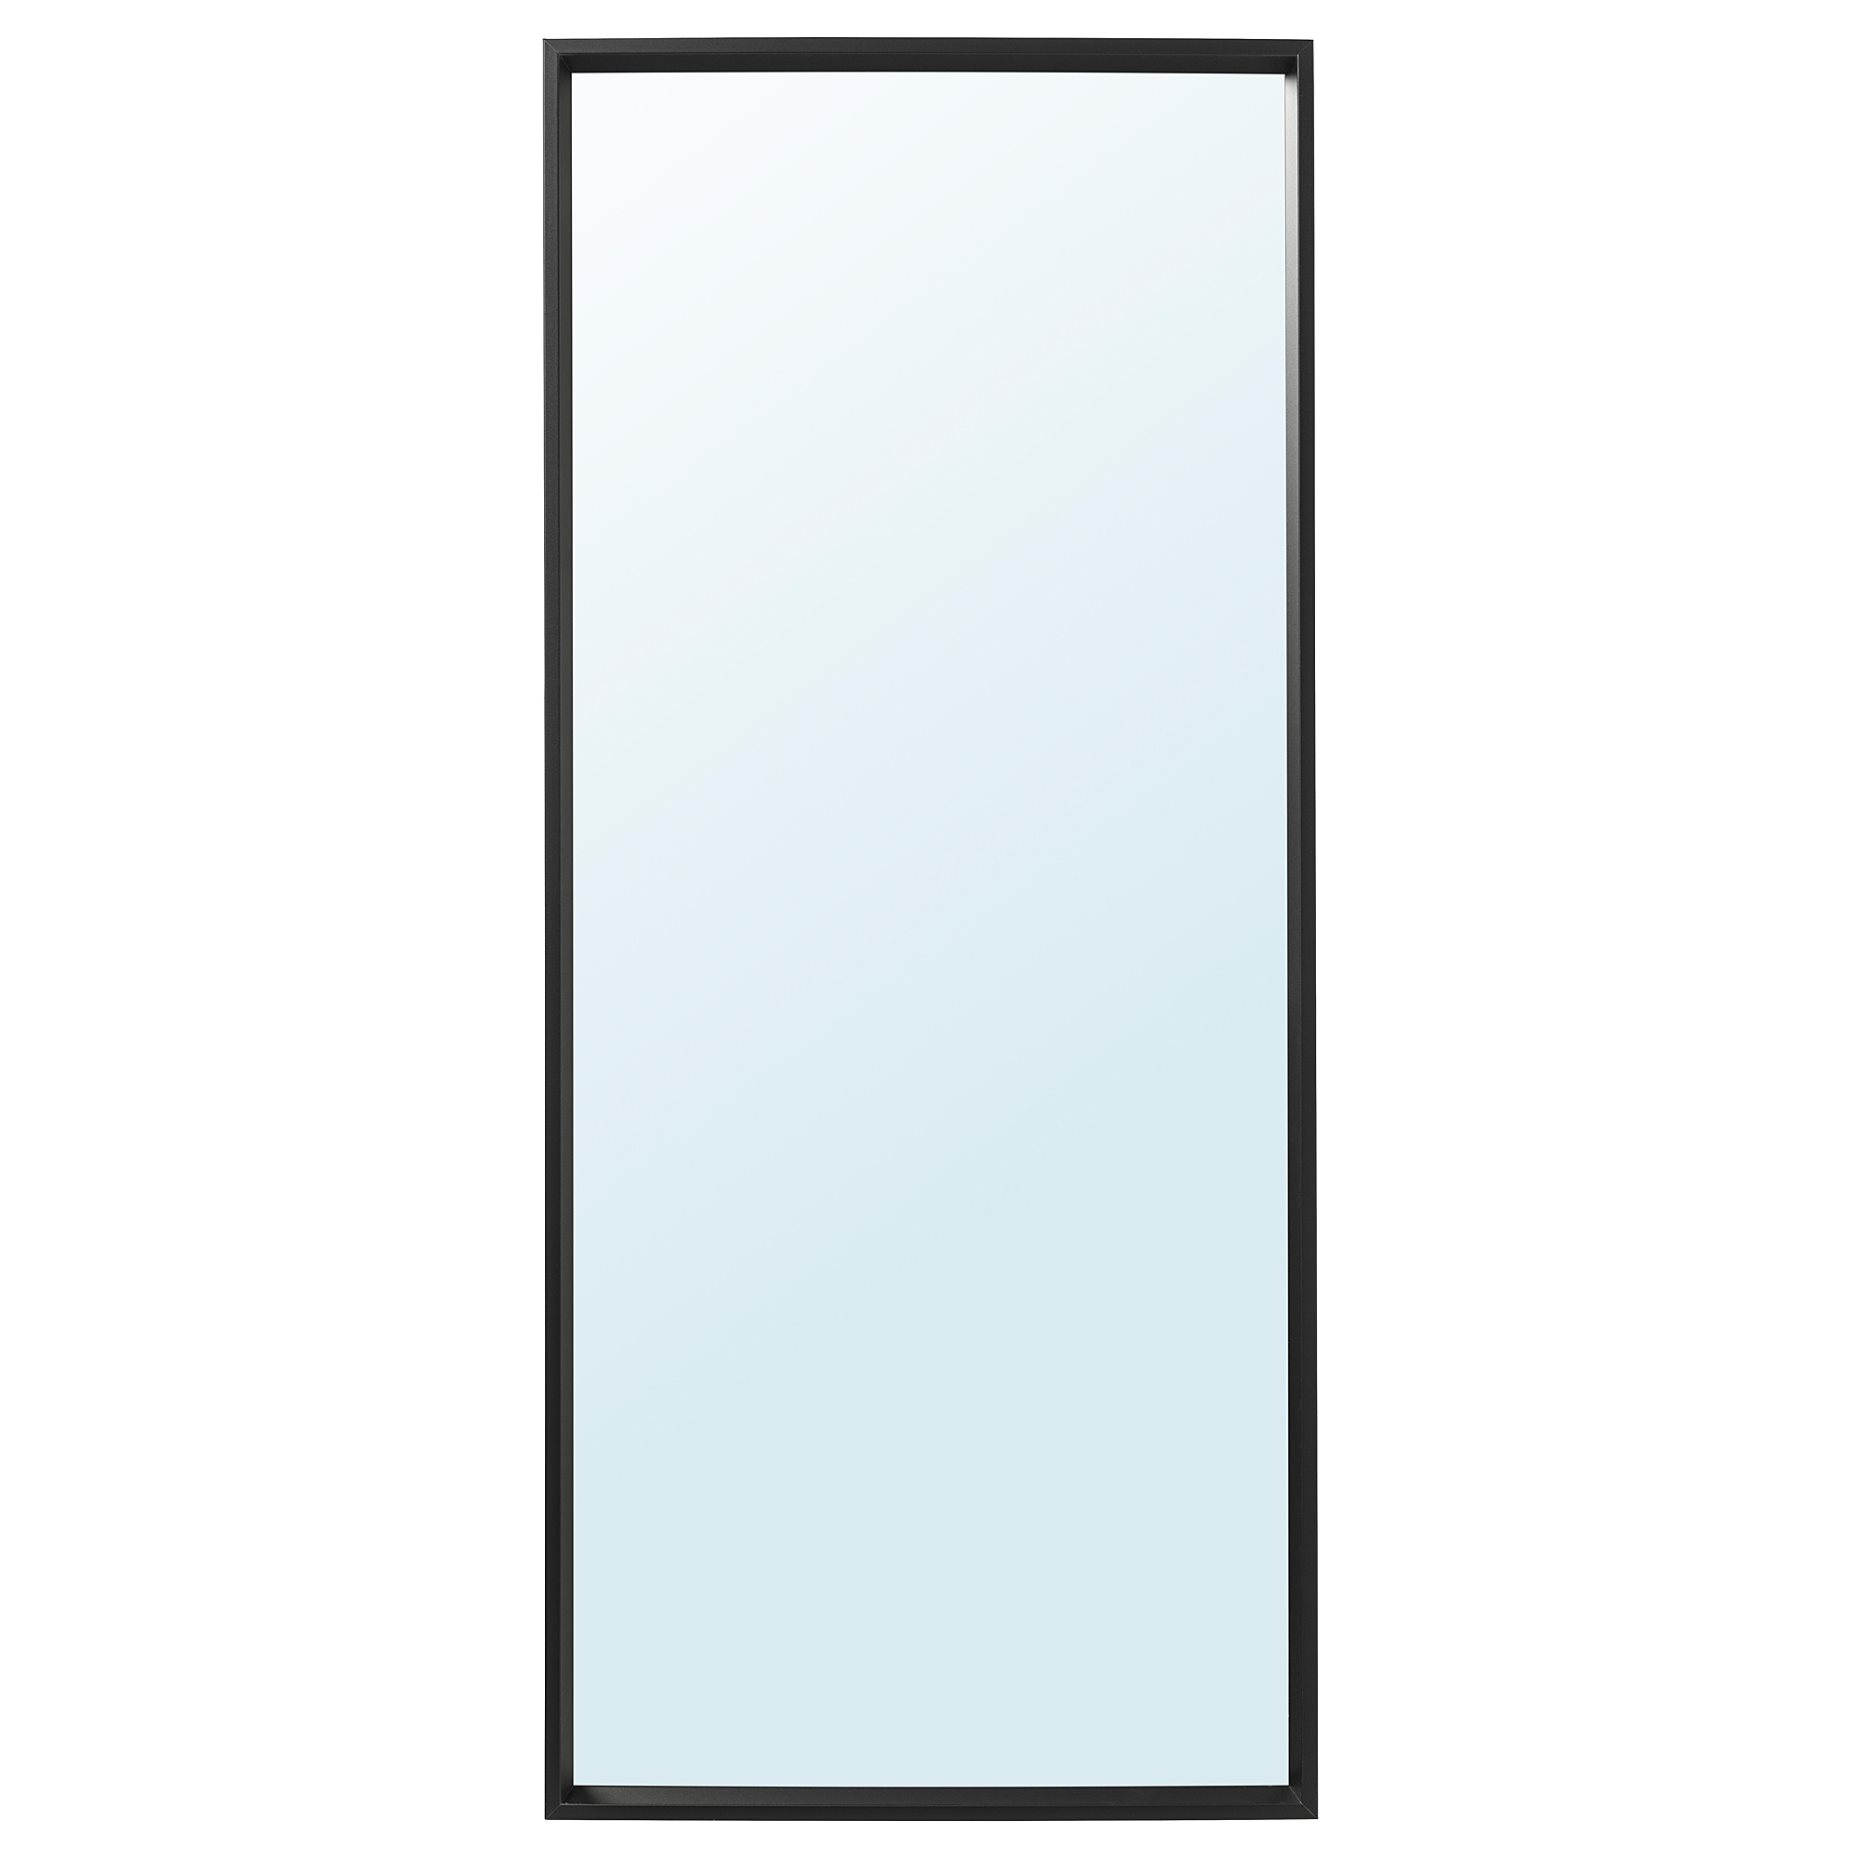 NISSEDAL, καθρέφτης, 65x150 cm, 703.203.19